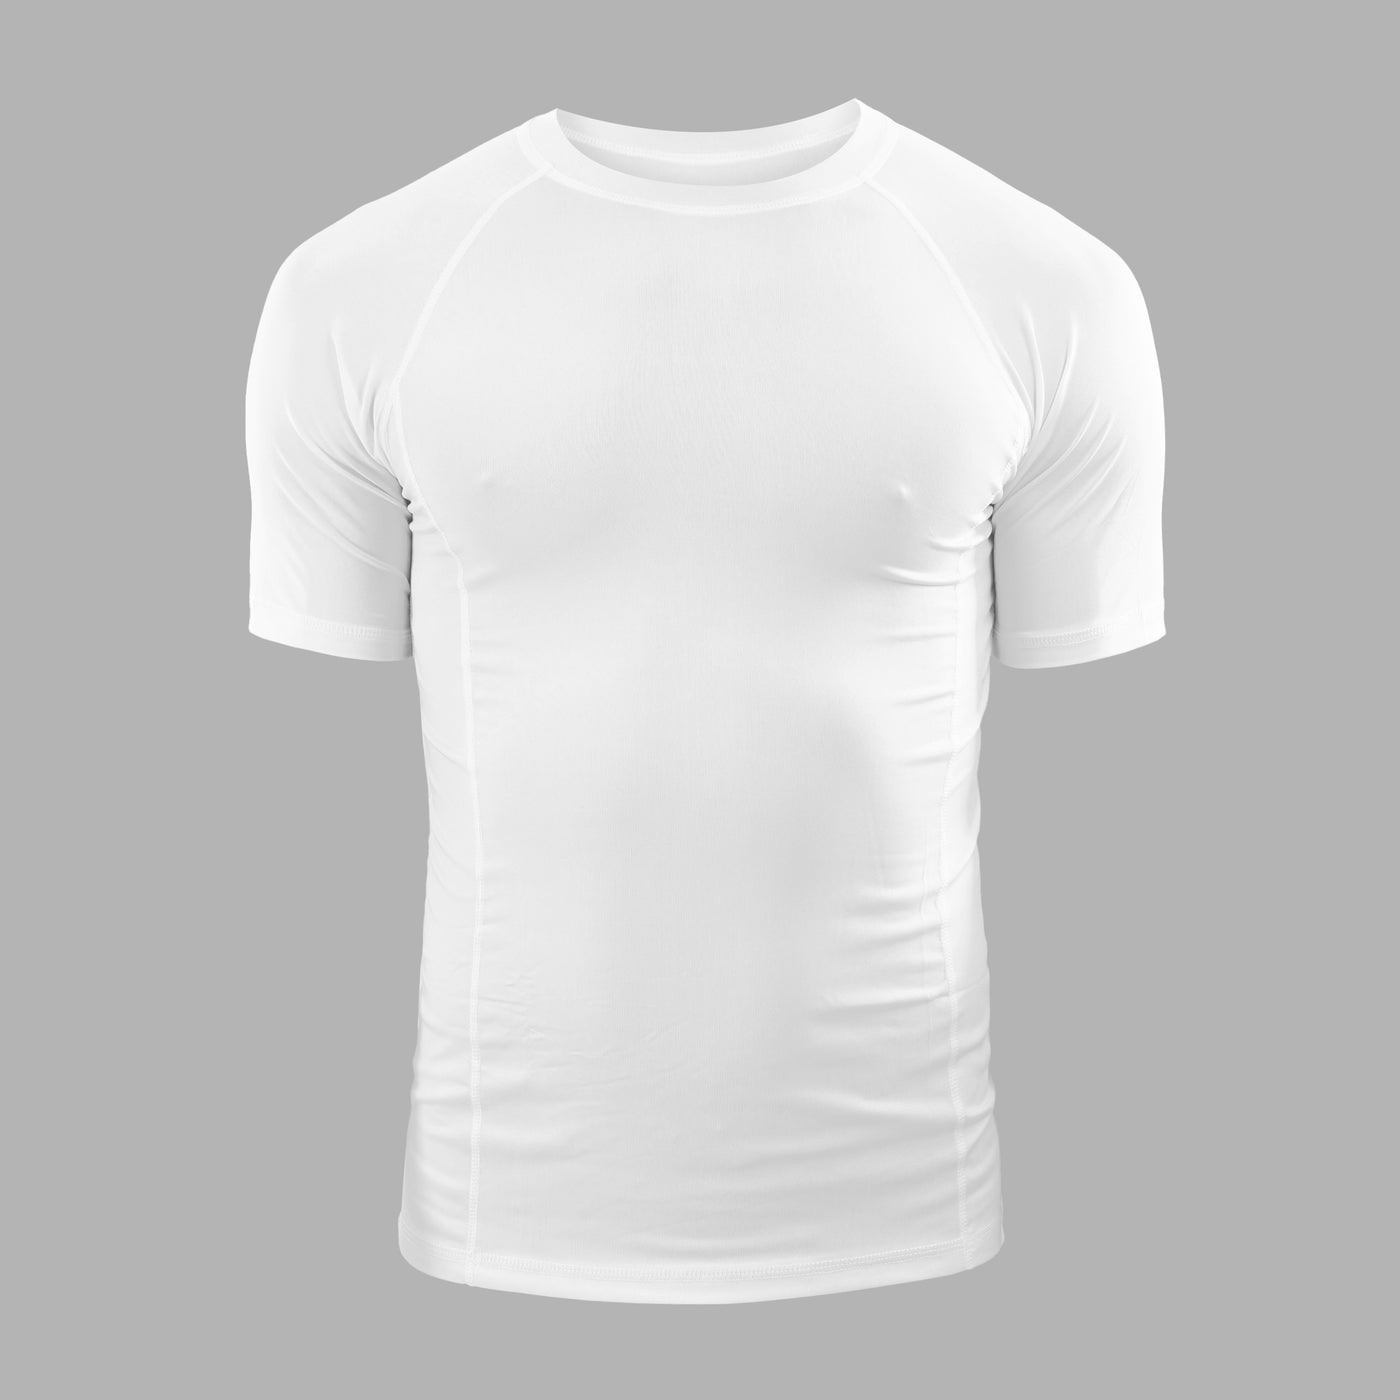 Basic White Compression Shirt